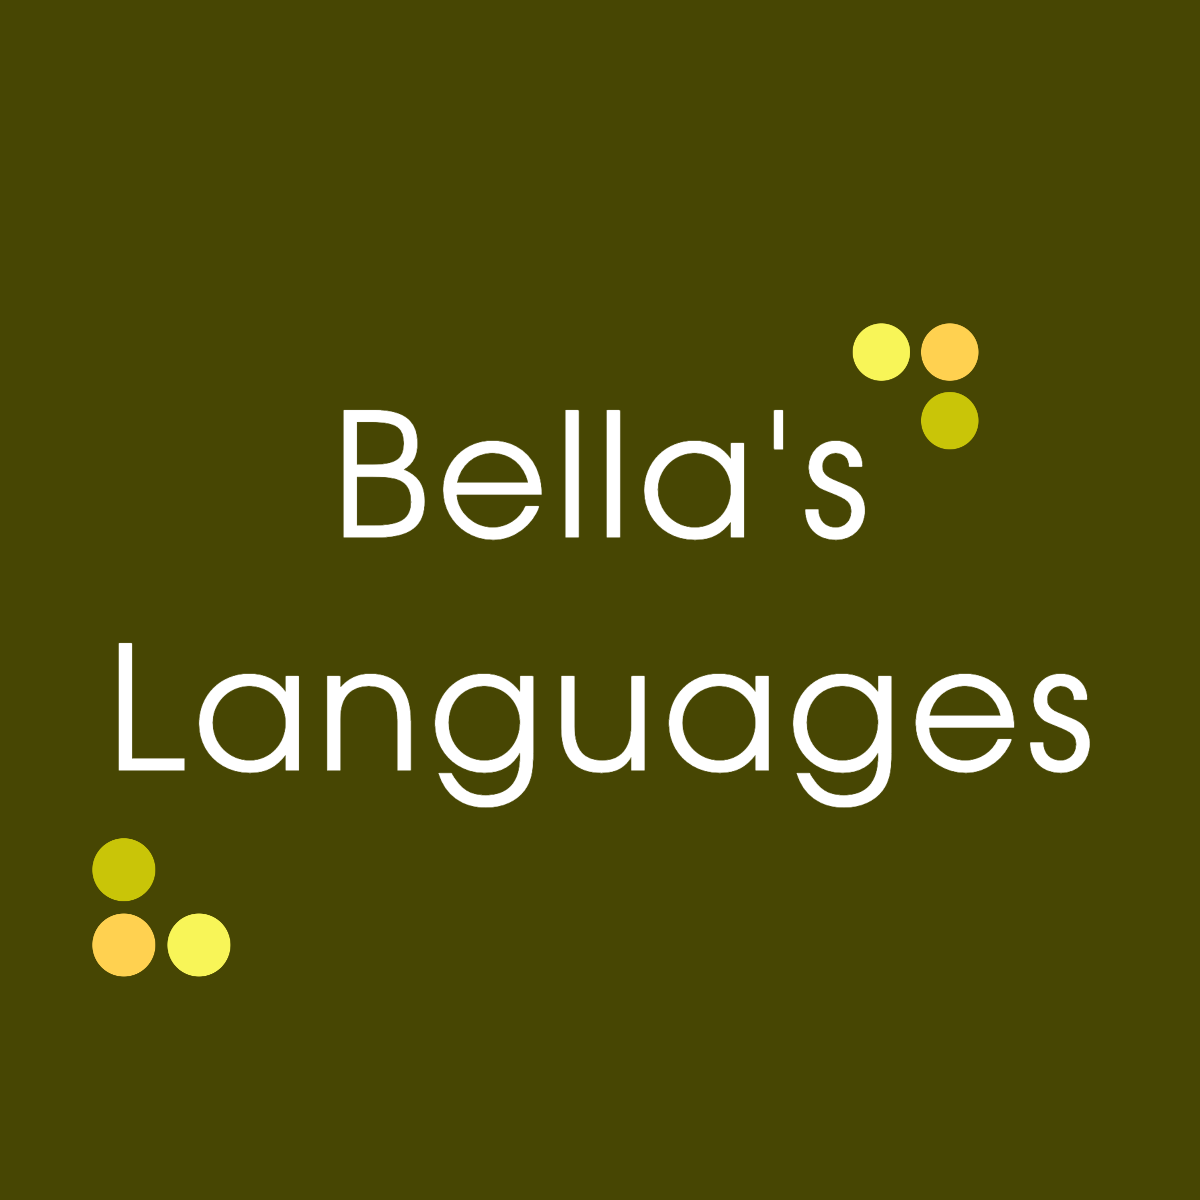 Bella's Languages